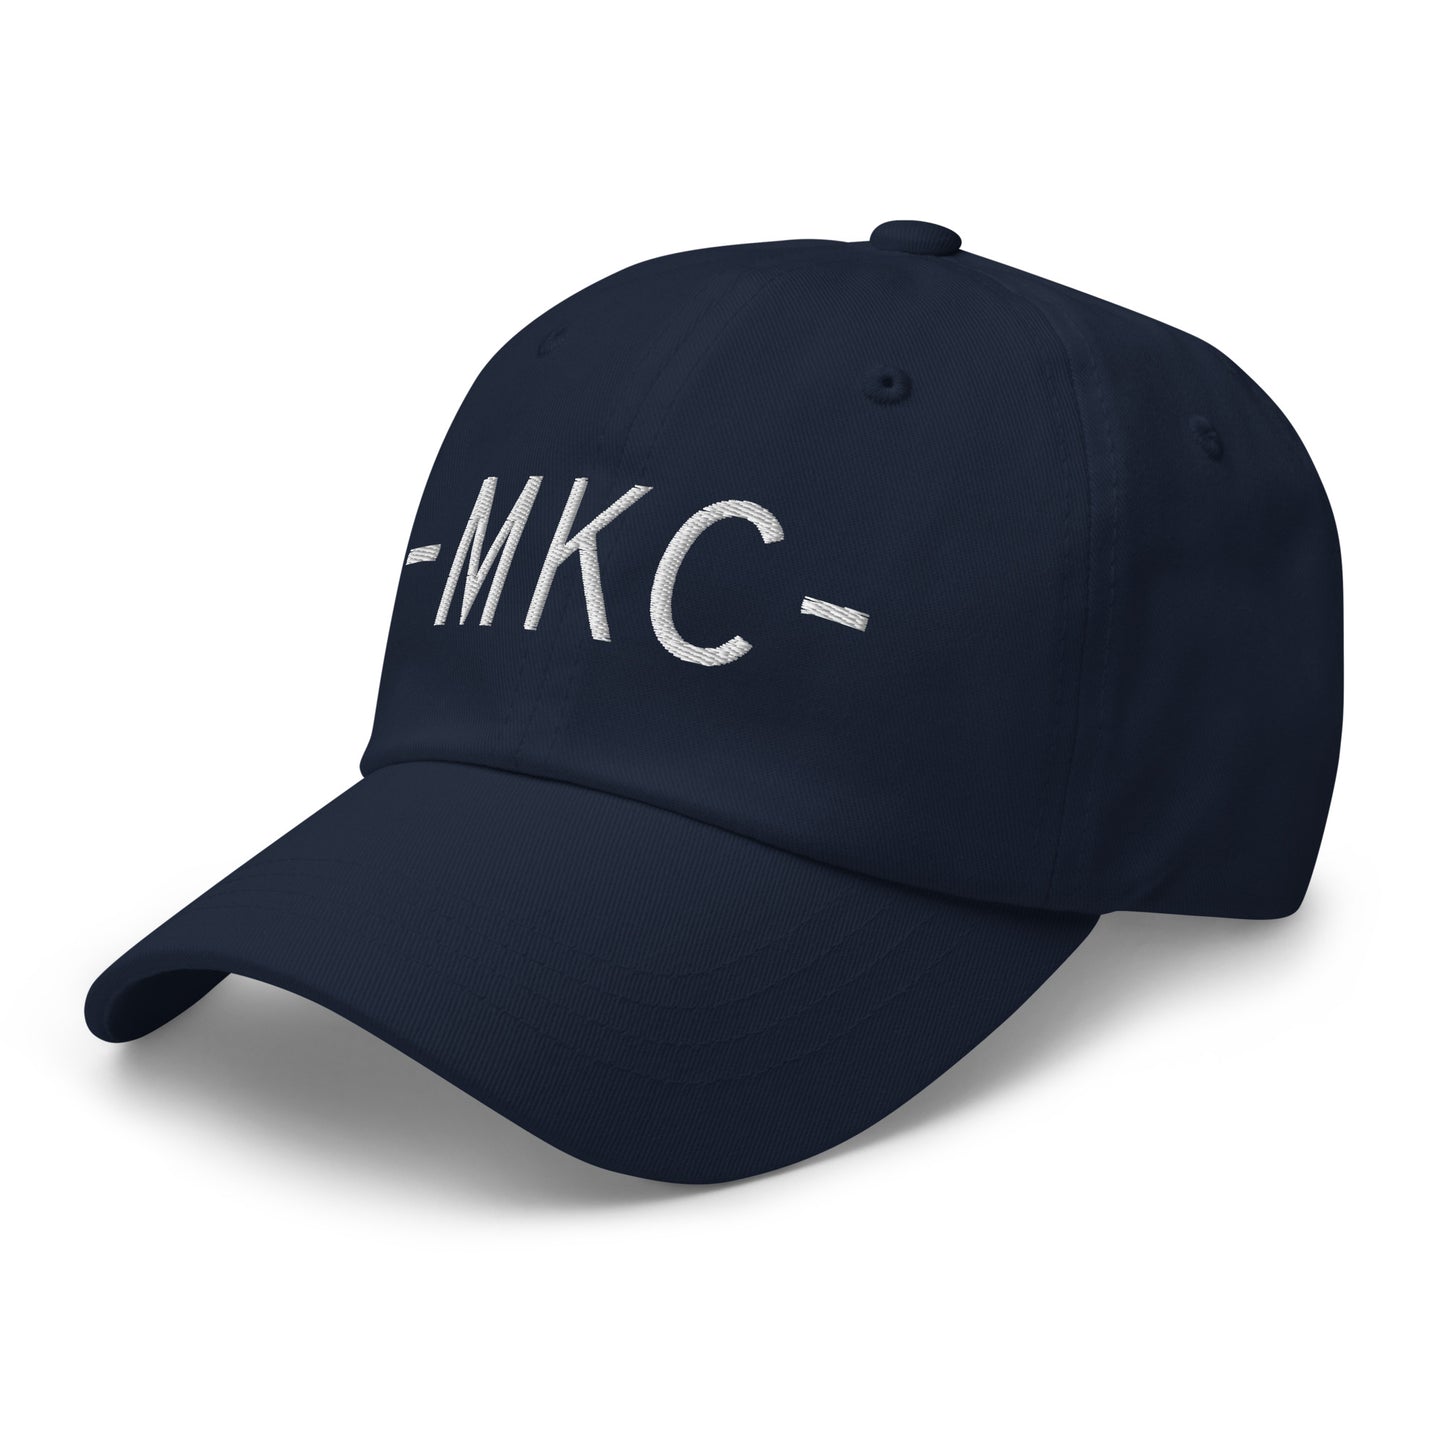 Souvenir Baseball Cap - White • MKC Kansas City • YHM Designs - Image 15